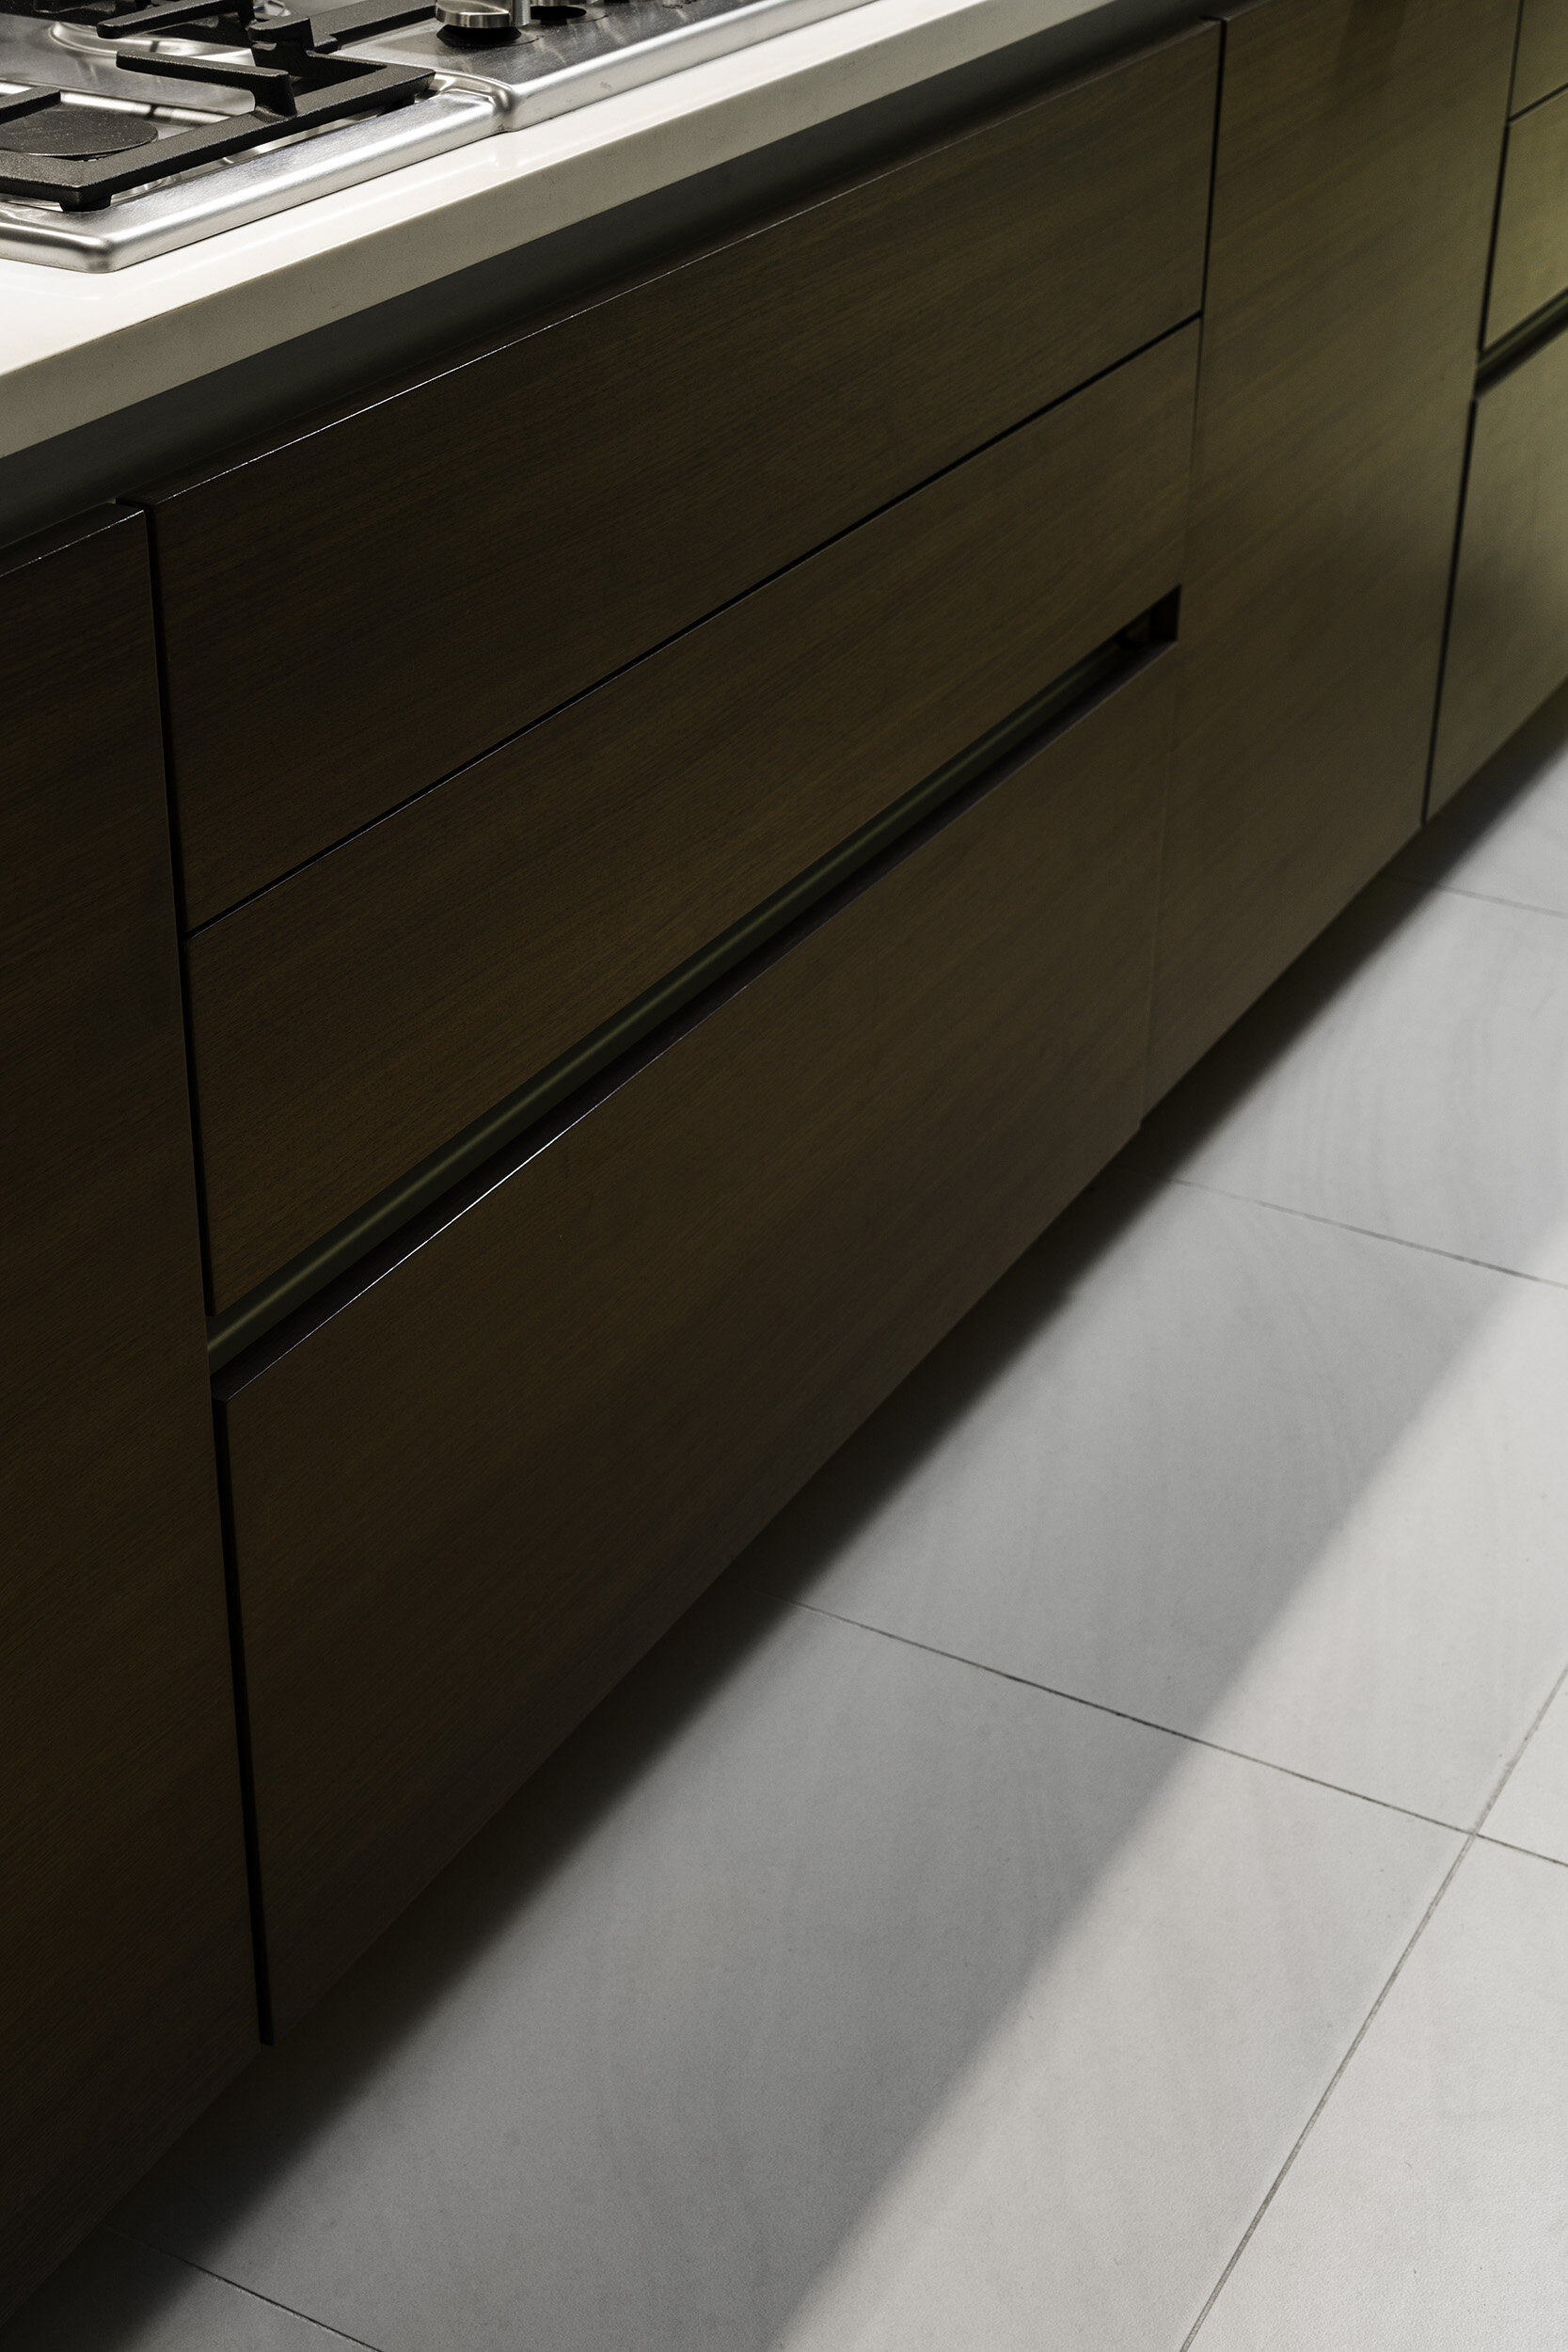 spectra-kitchen-drawers-1.jpg